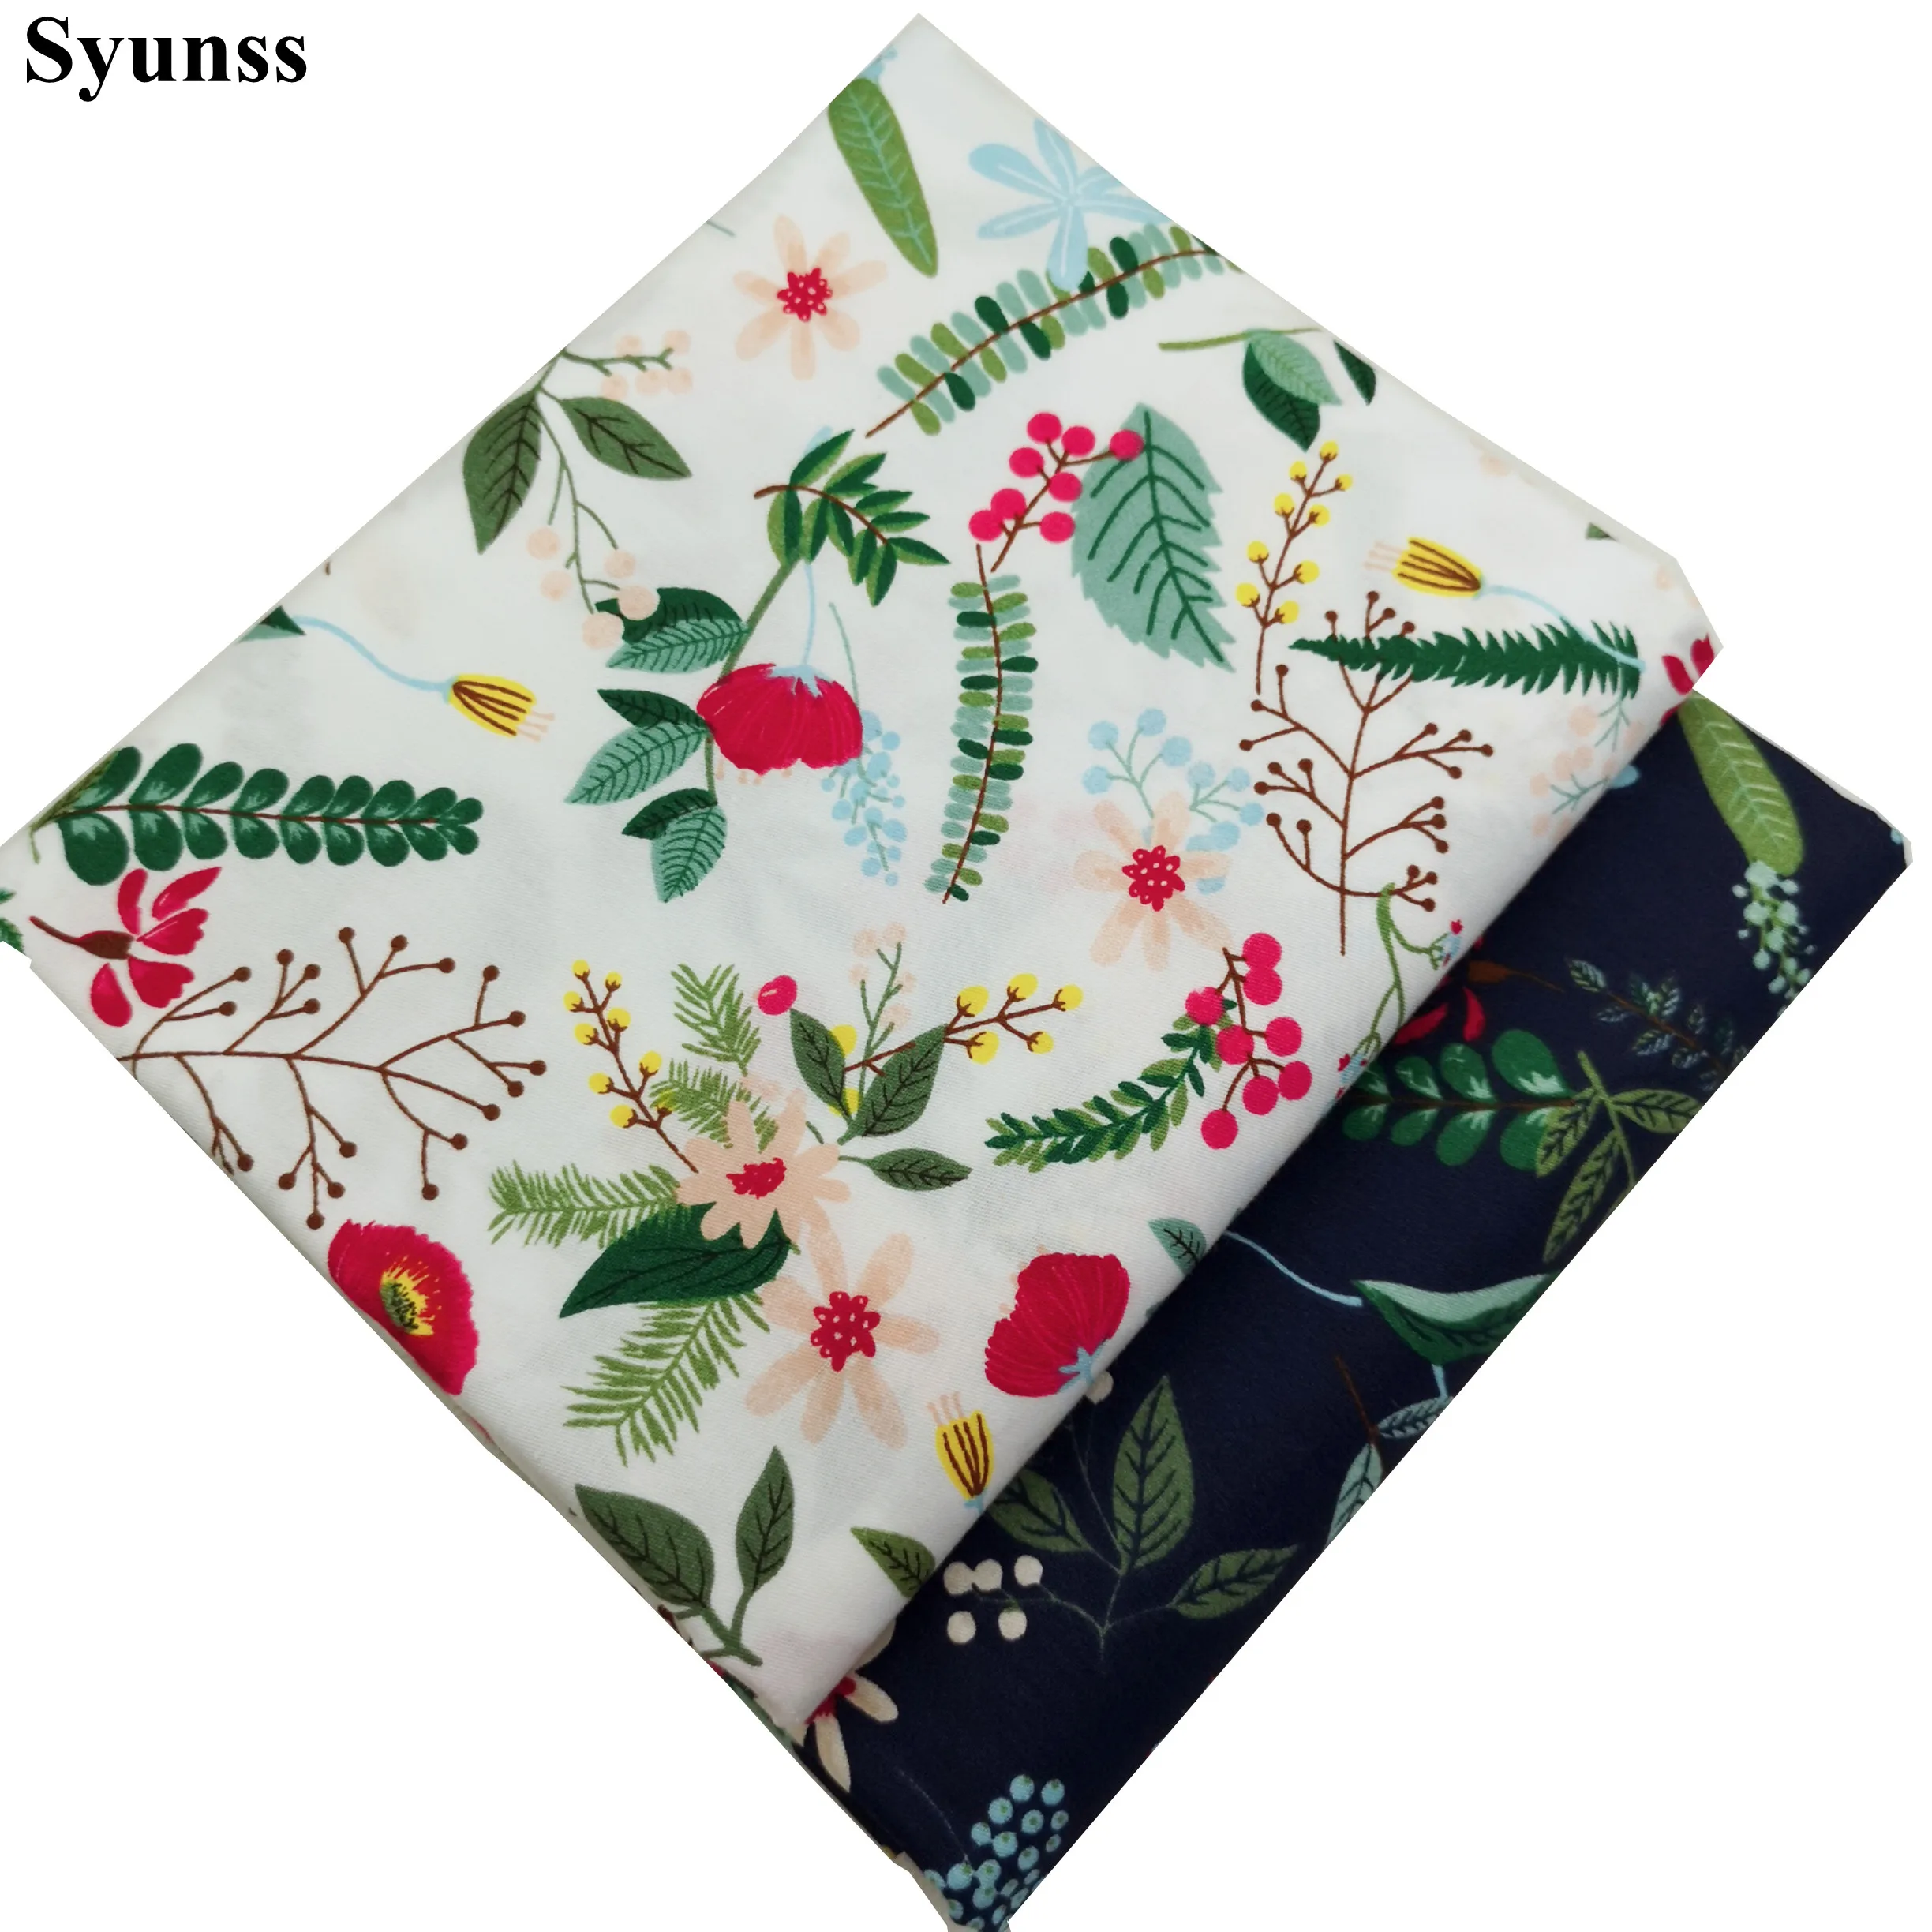 Syunss Diy Лоскутная Ткань для квилтинга колыбели подушки платье ткань для вышивки цветов Цветочная набивная саржа хлопковая ткань